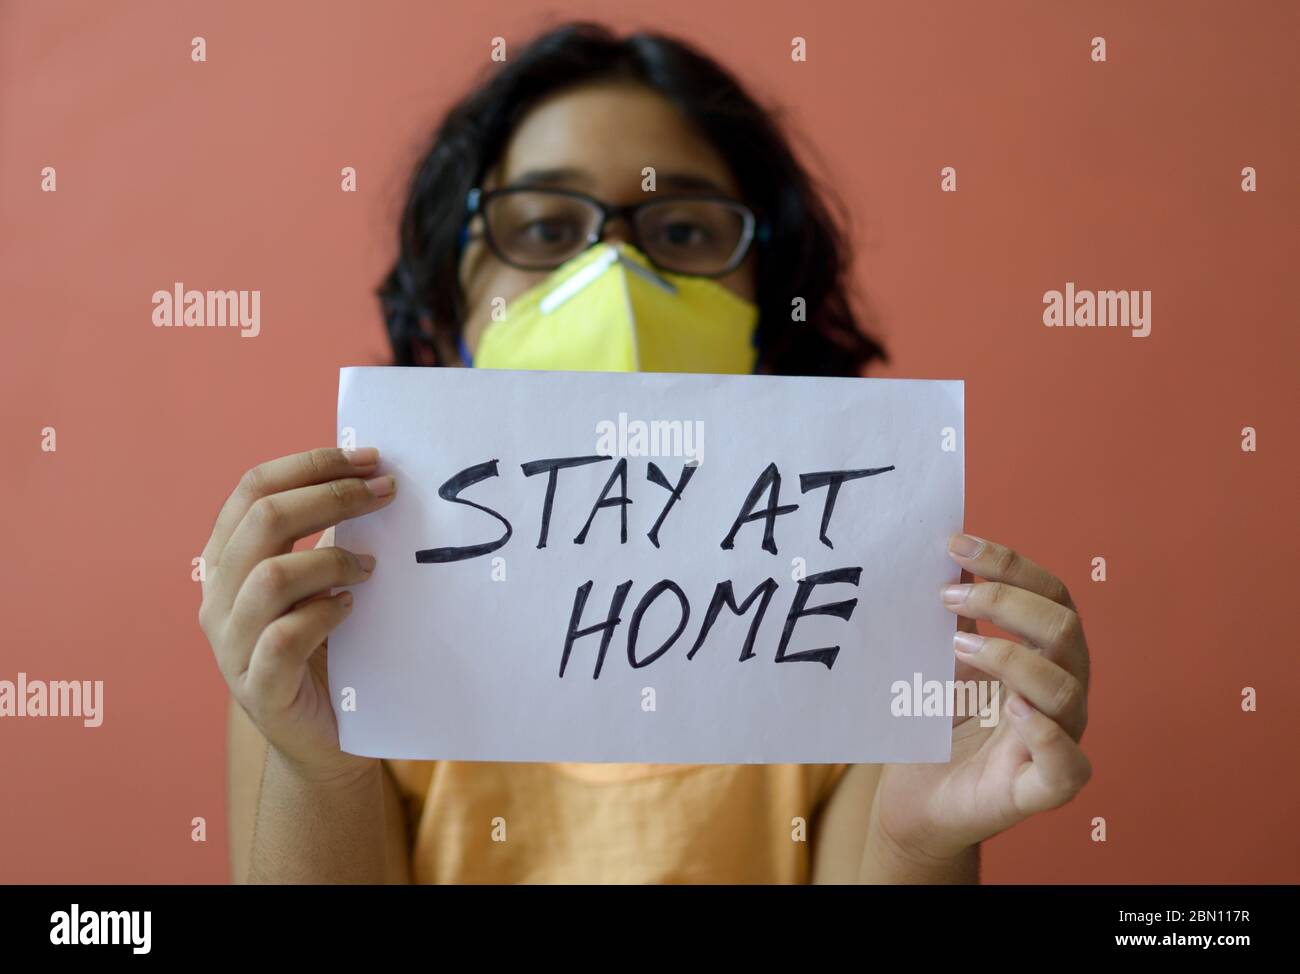 Kleines indisches Mädchen mit Gesichtsmaske hält ein Plakat in den Händen und zeigt eine Botschaft "Stay at Home" während der COVID-19 Pandemie, um soziale Distanz zu erhalten. Stockfoto